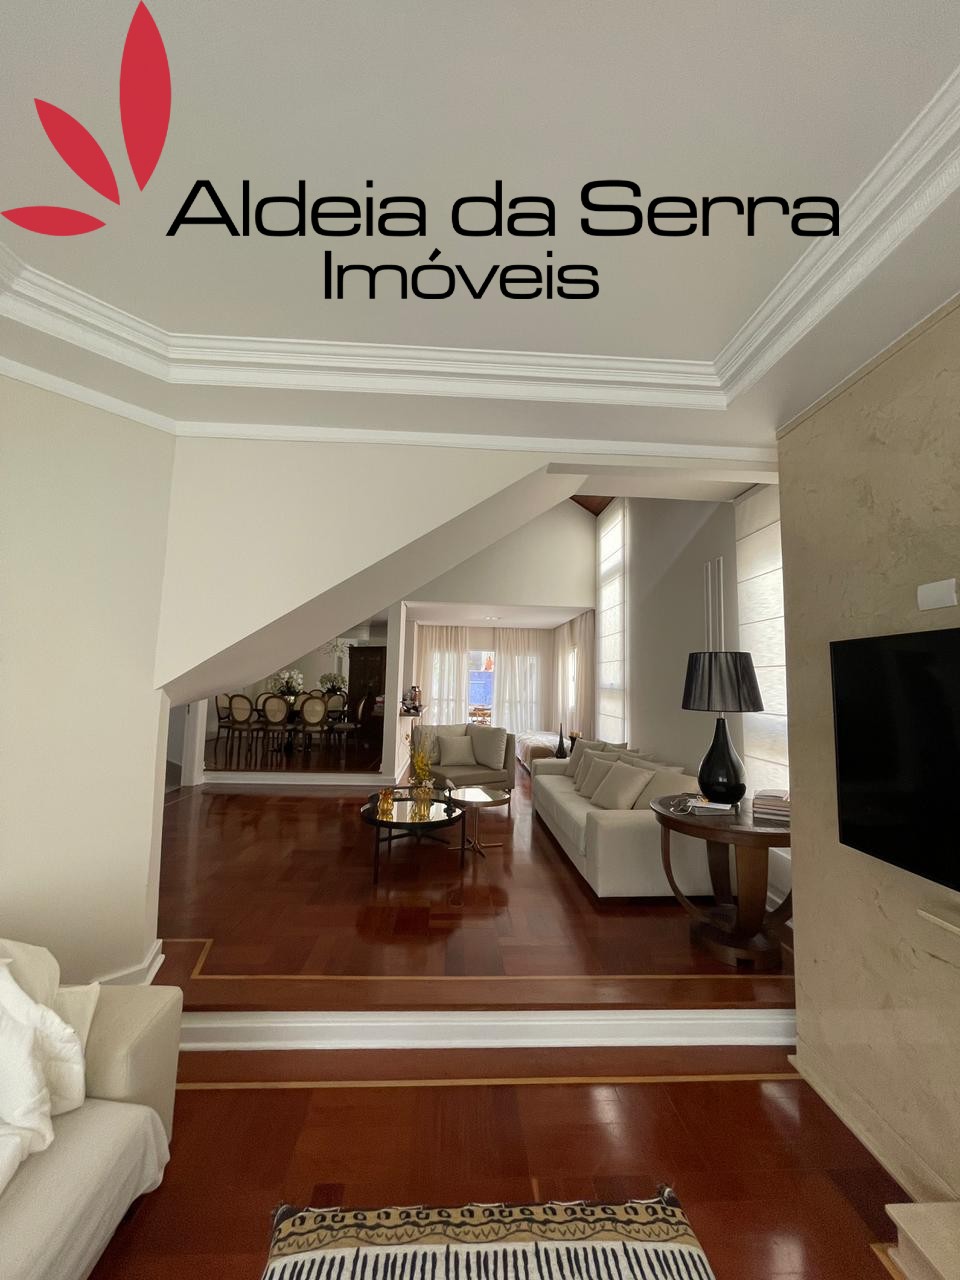 /admin/imoveis/fotos/IMG-20210614-WA0011.jpg Aldeia da Serra Imoveis